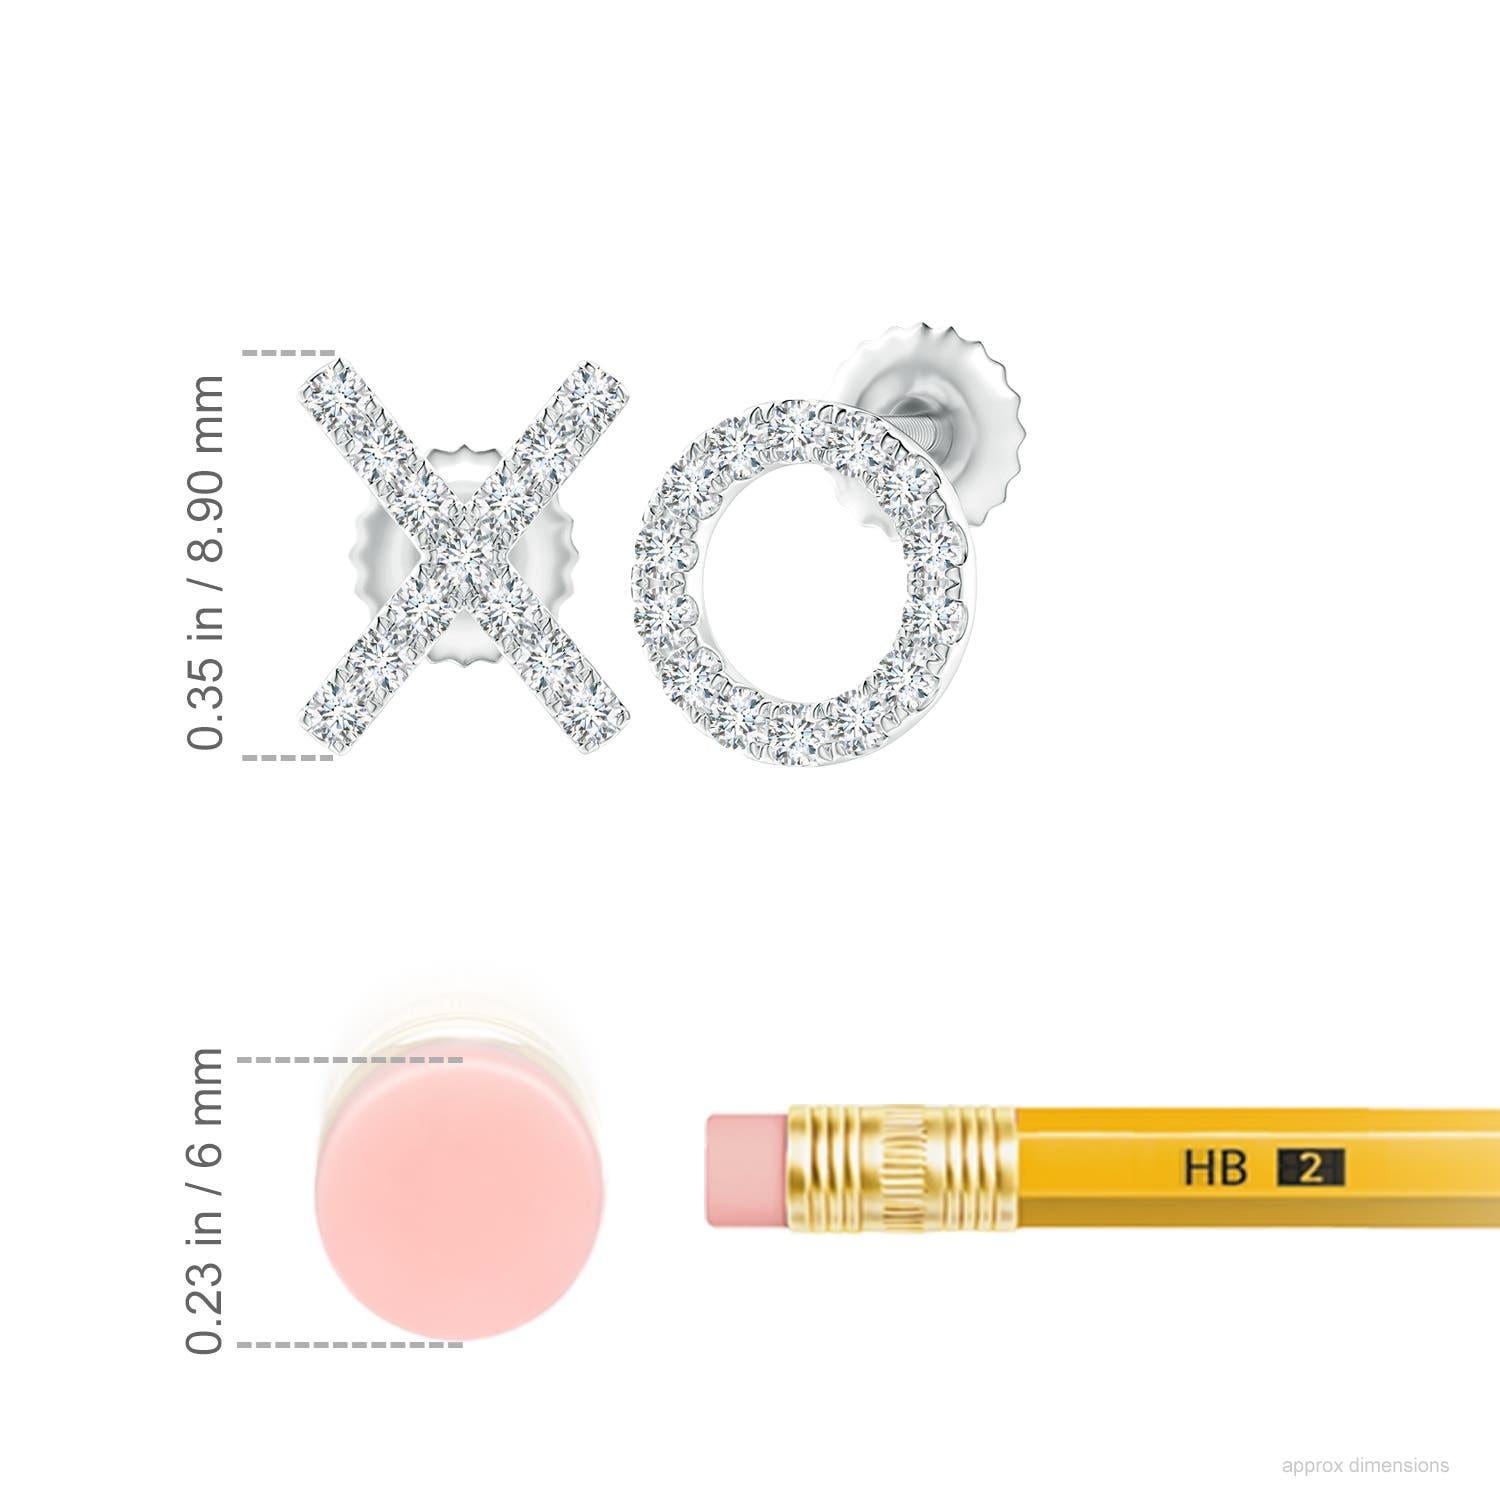 Die aus Platin gefertigten XO-Ohrstecker sind einfach faszinierend. Funkelnde runde Diamanten in einer U-Pava-Fassung schmücken das XO-Muster und verleihen diesen bezaubernden Ohrsteckern eine schillernde Note.
Der Diamant ist der Geburtsstein des